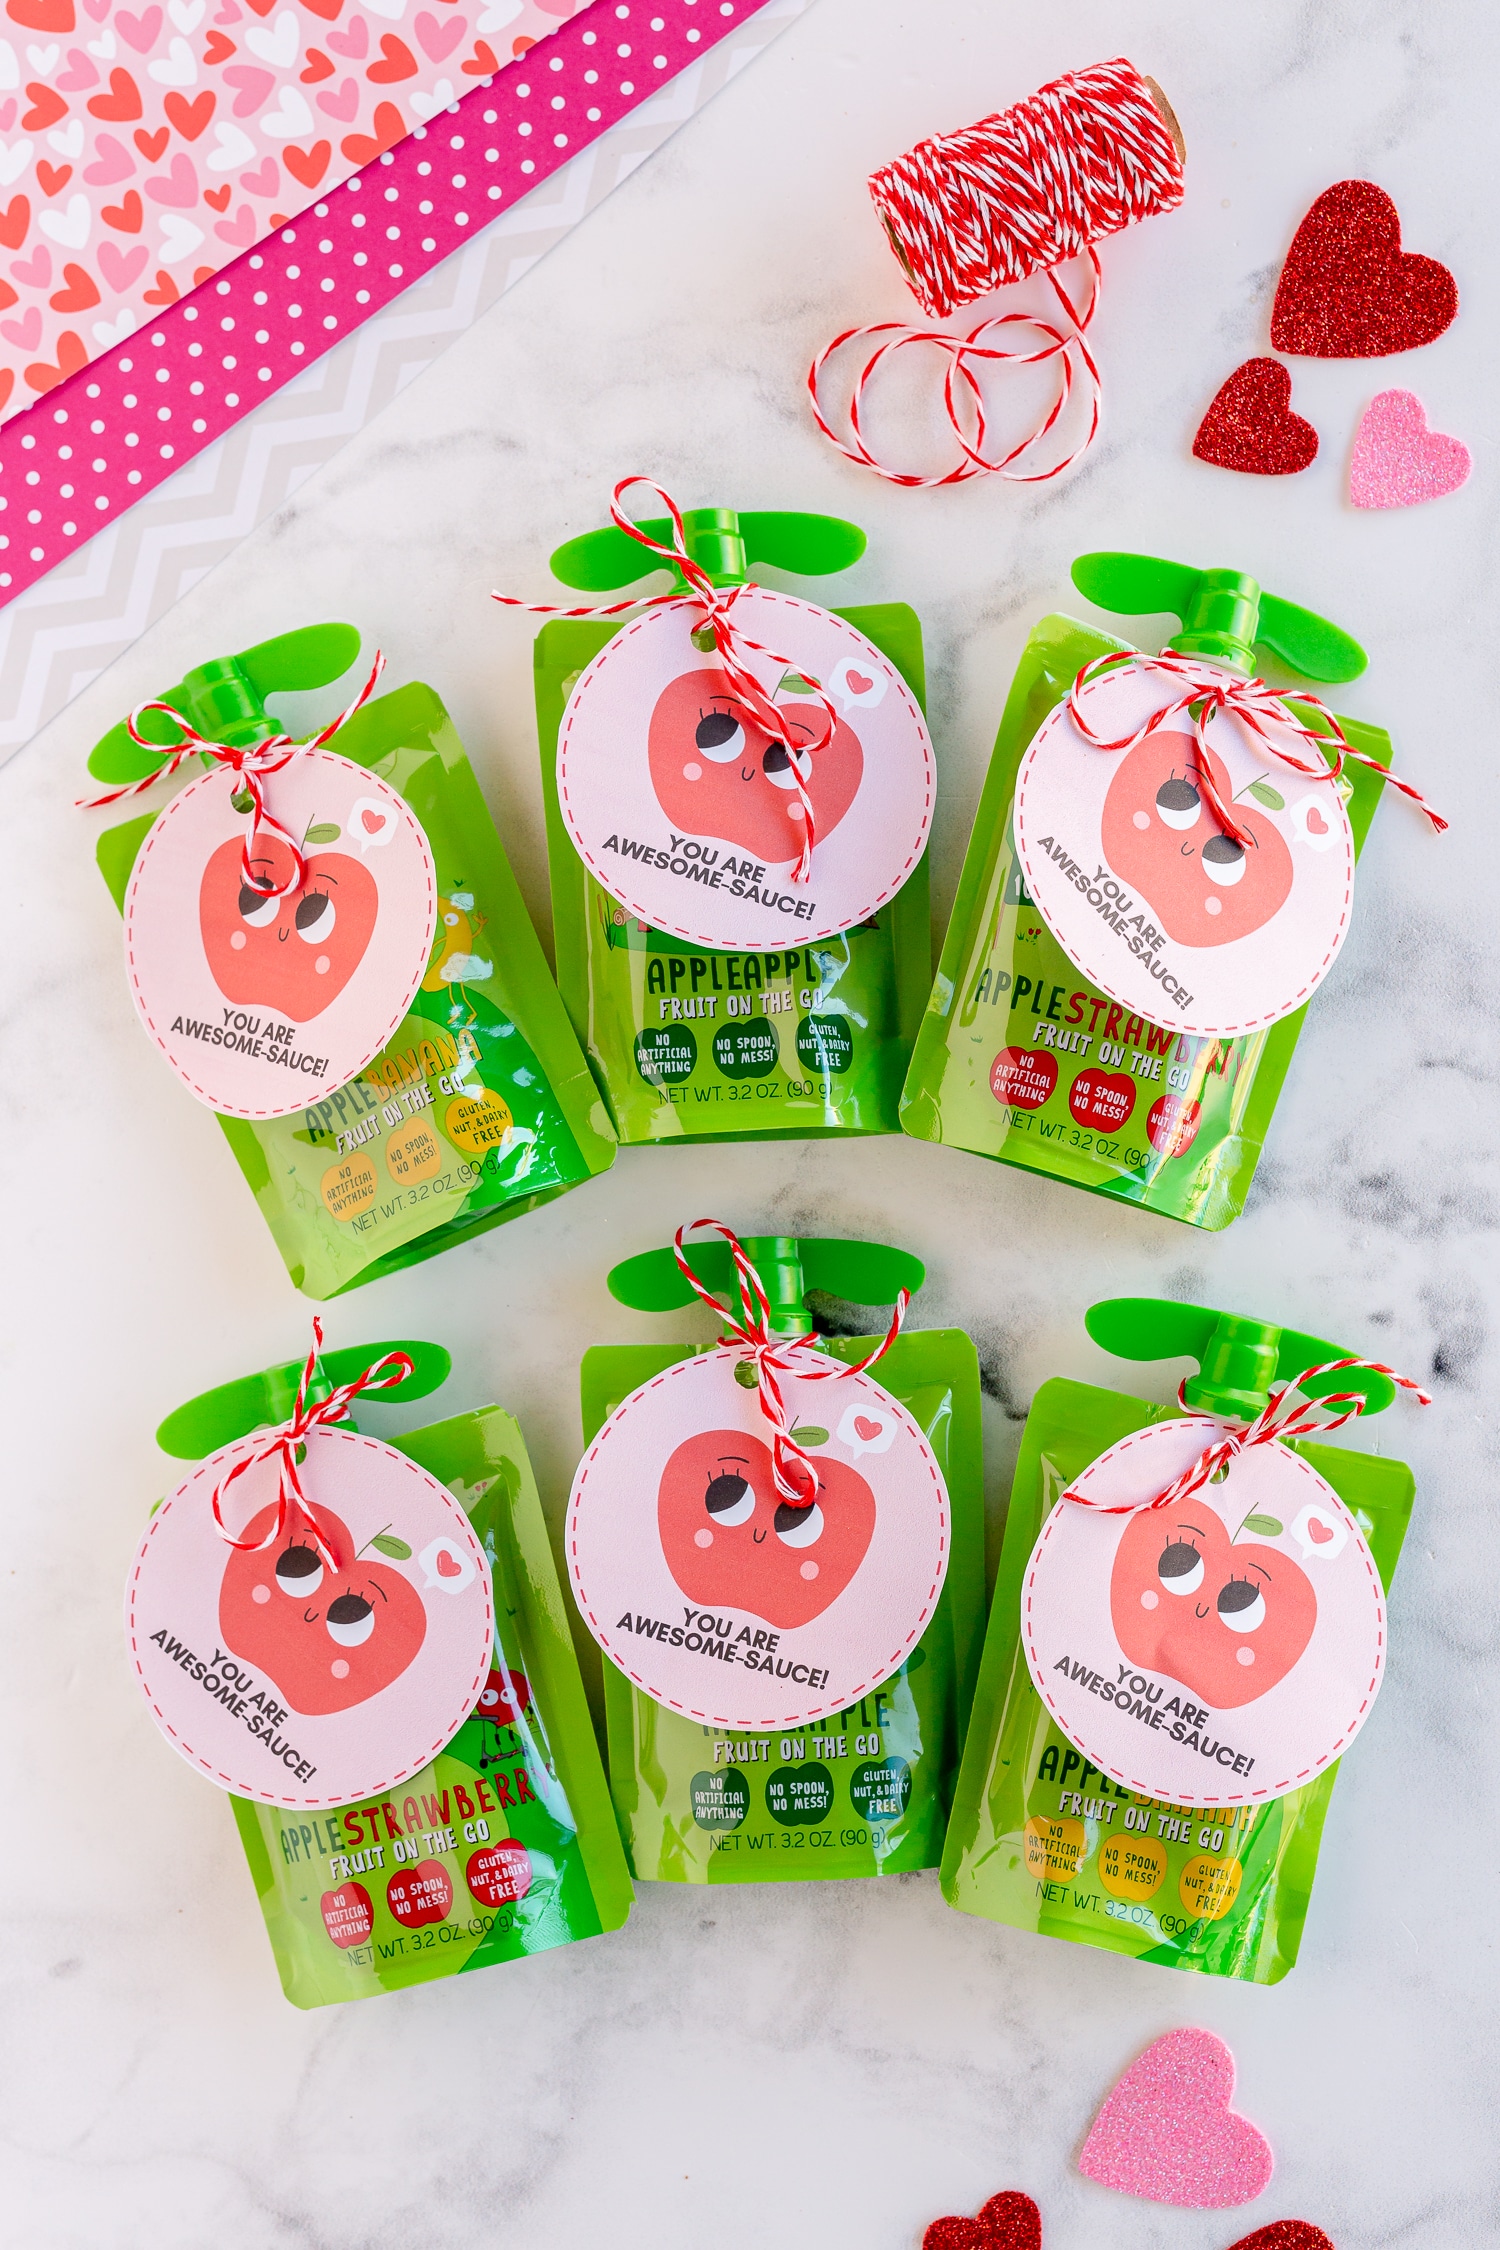 Applesauce Valentine’s Day Gift